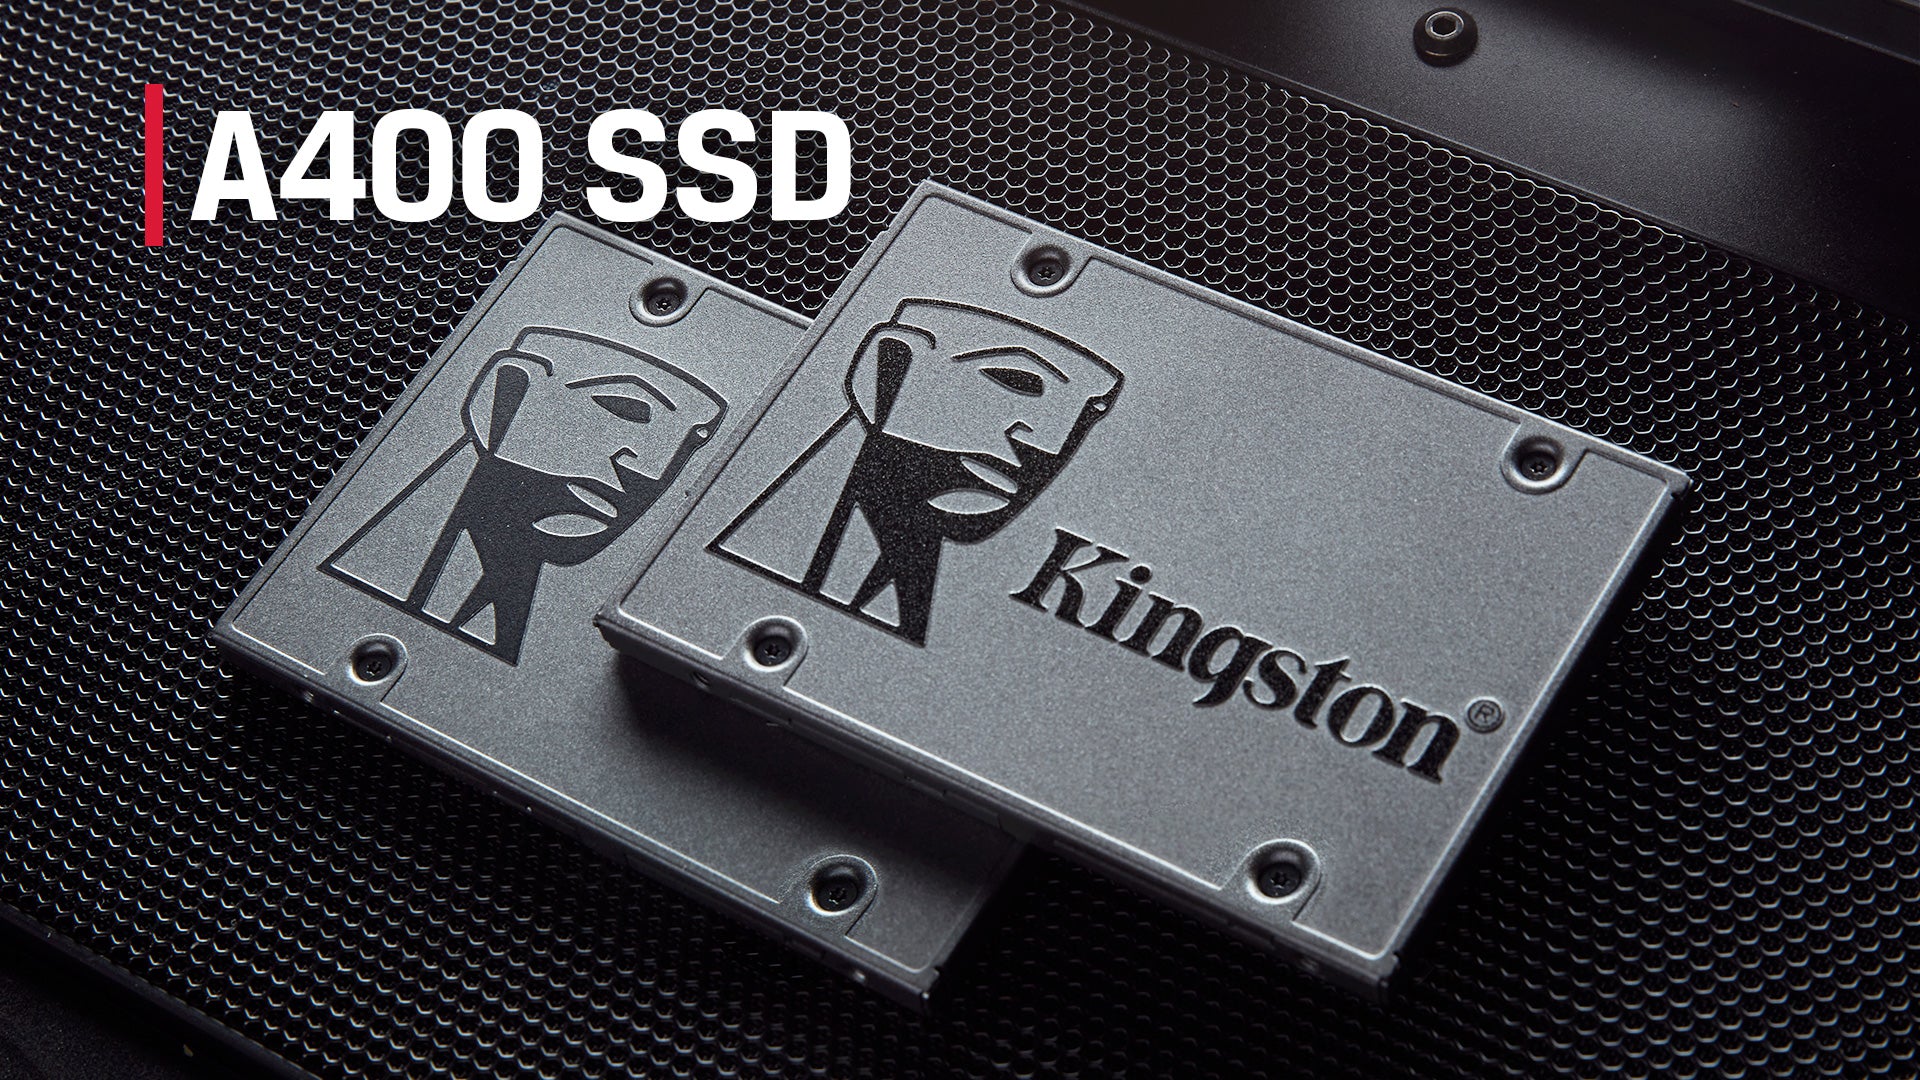 Kingston A400 3D NAND SSD - Ultra-Responsive Kingston Technology